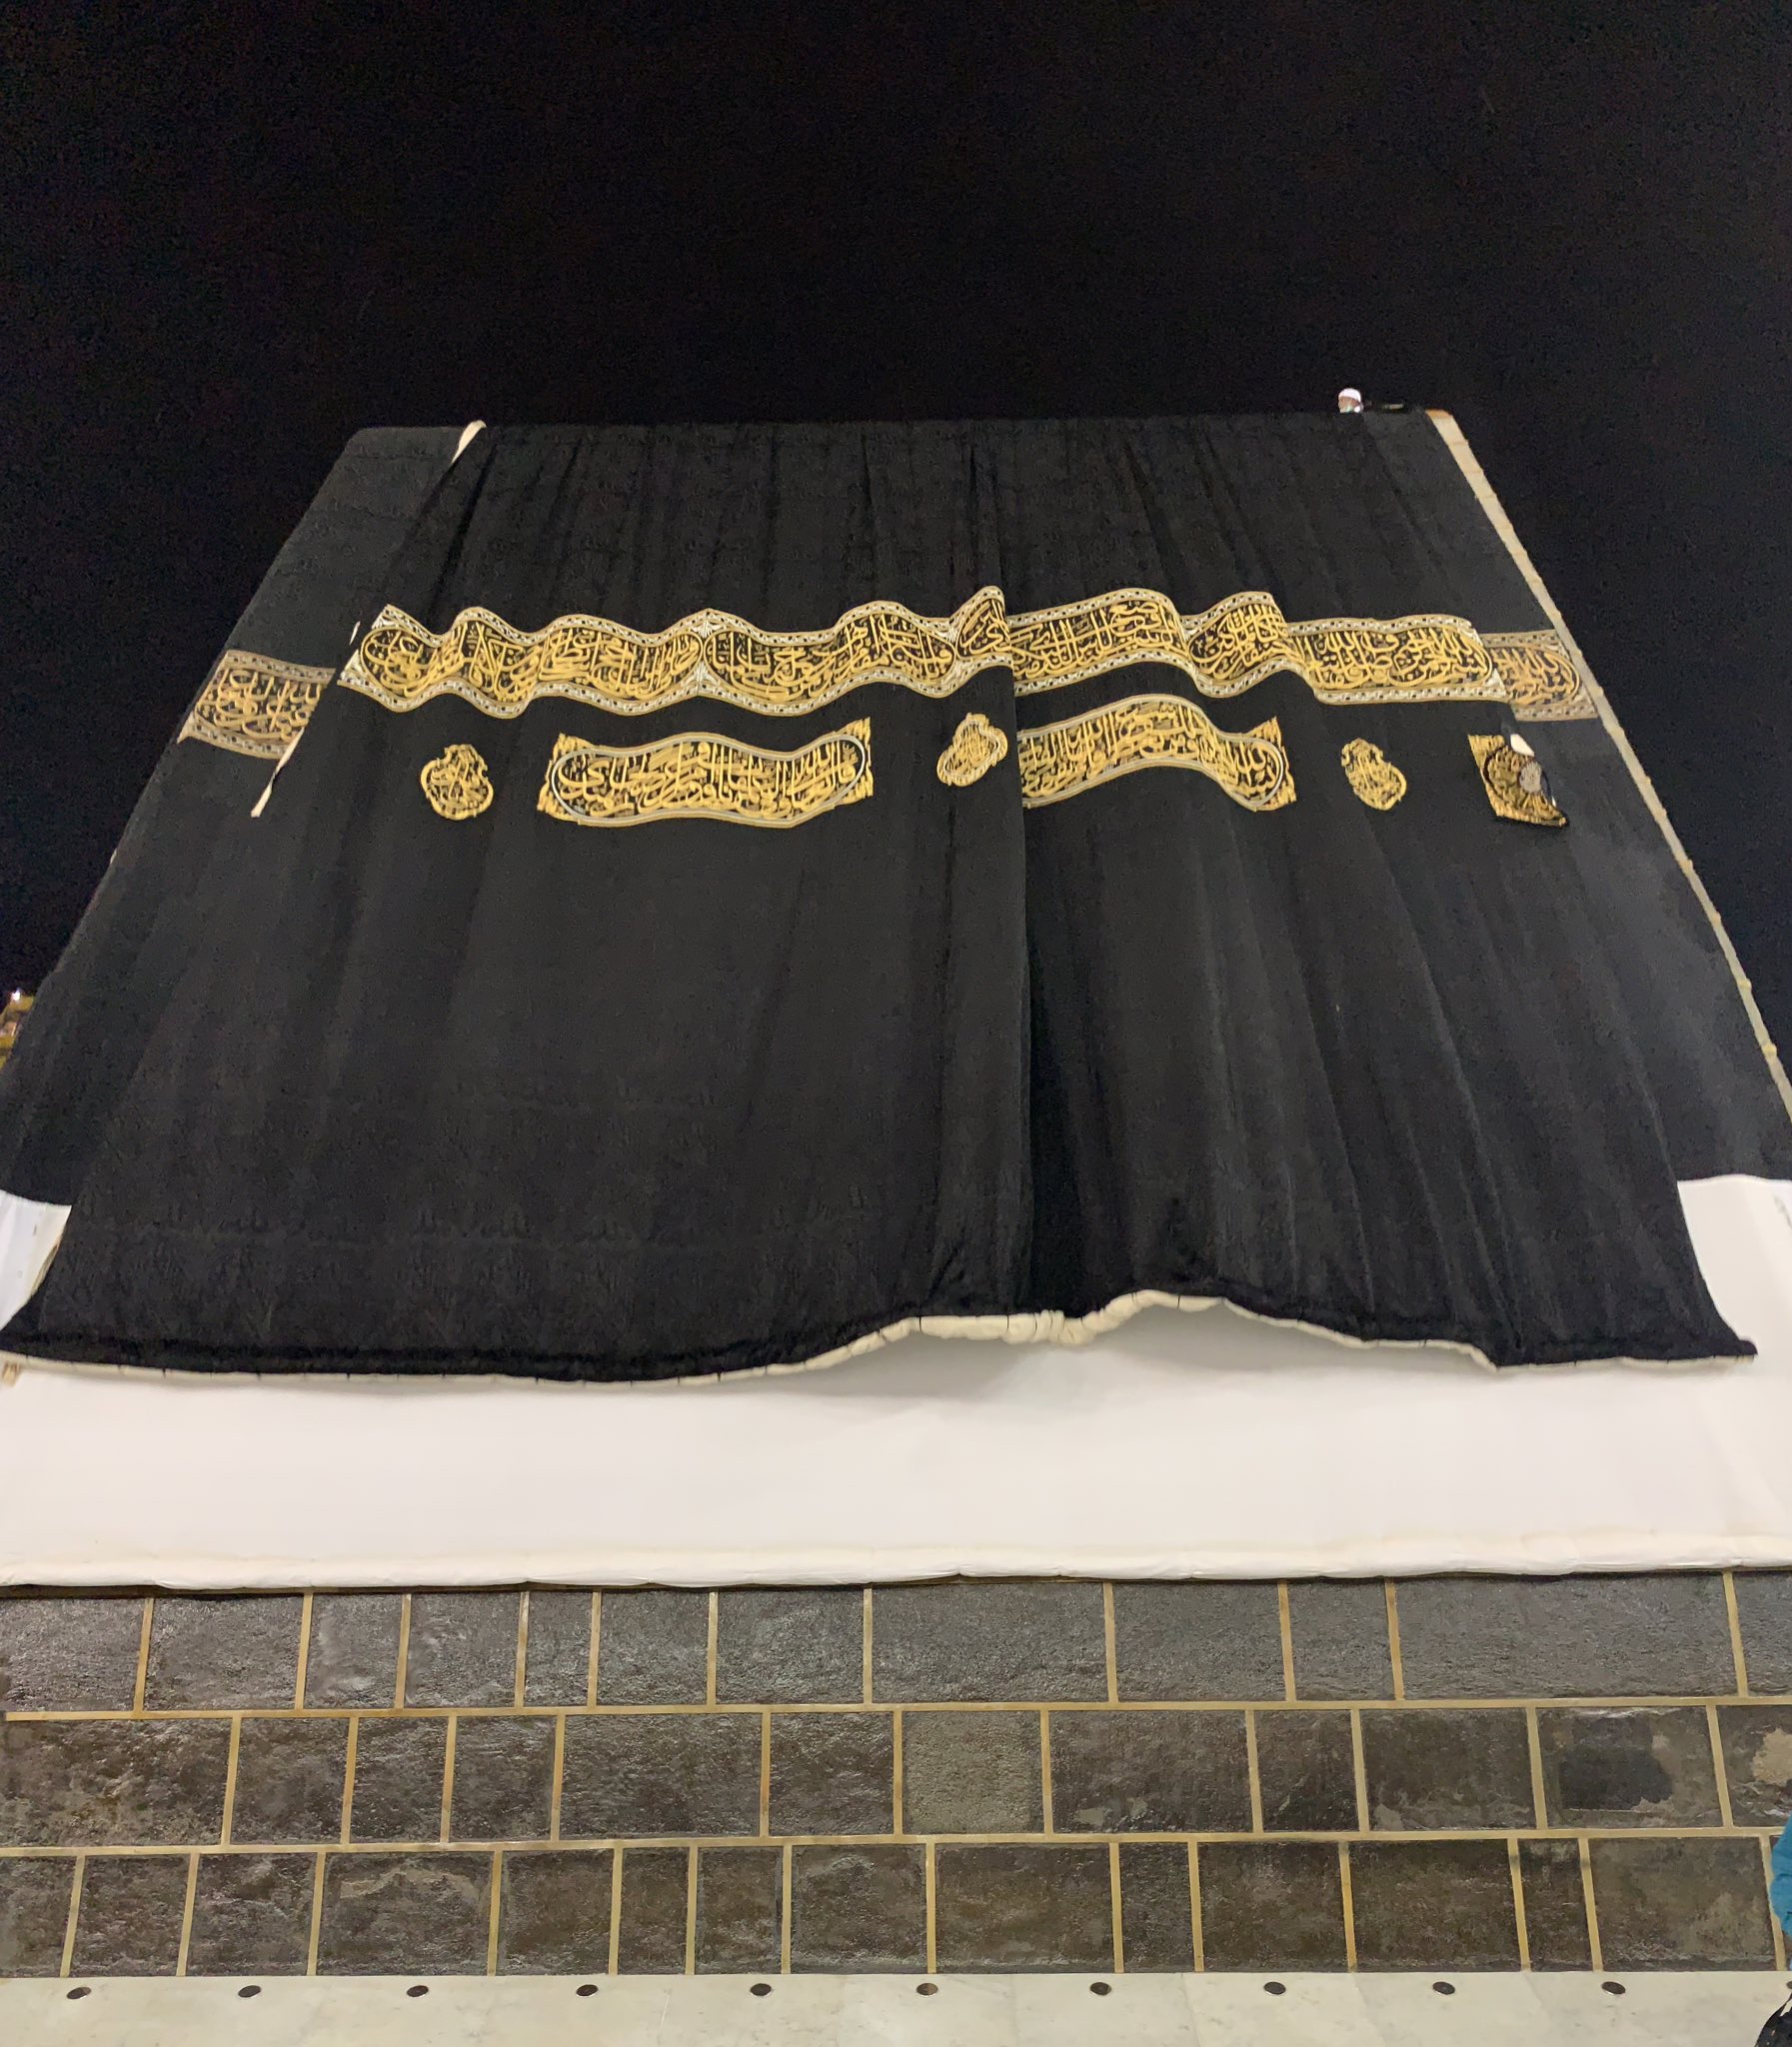 kiswa change Kaaba